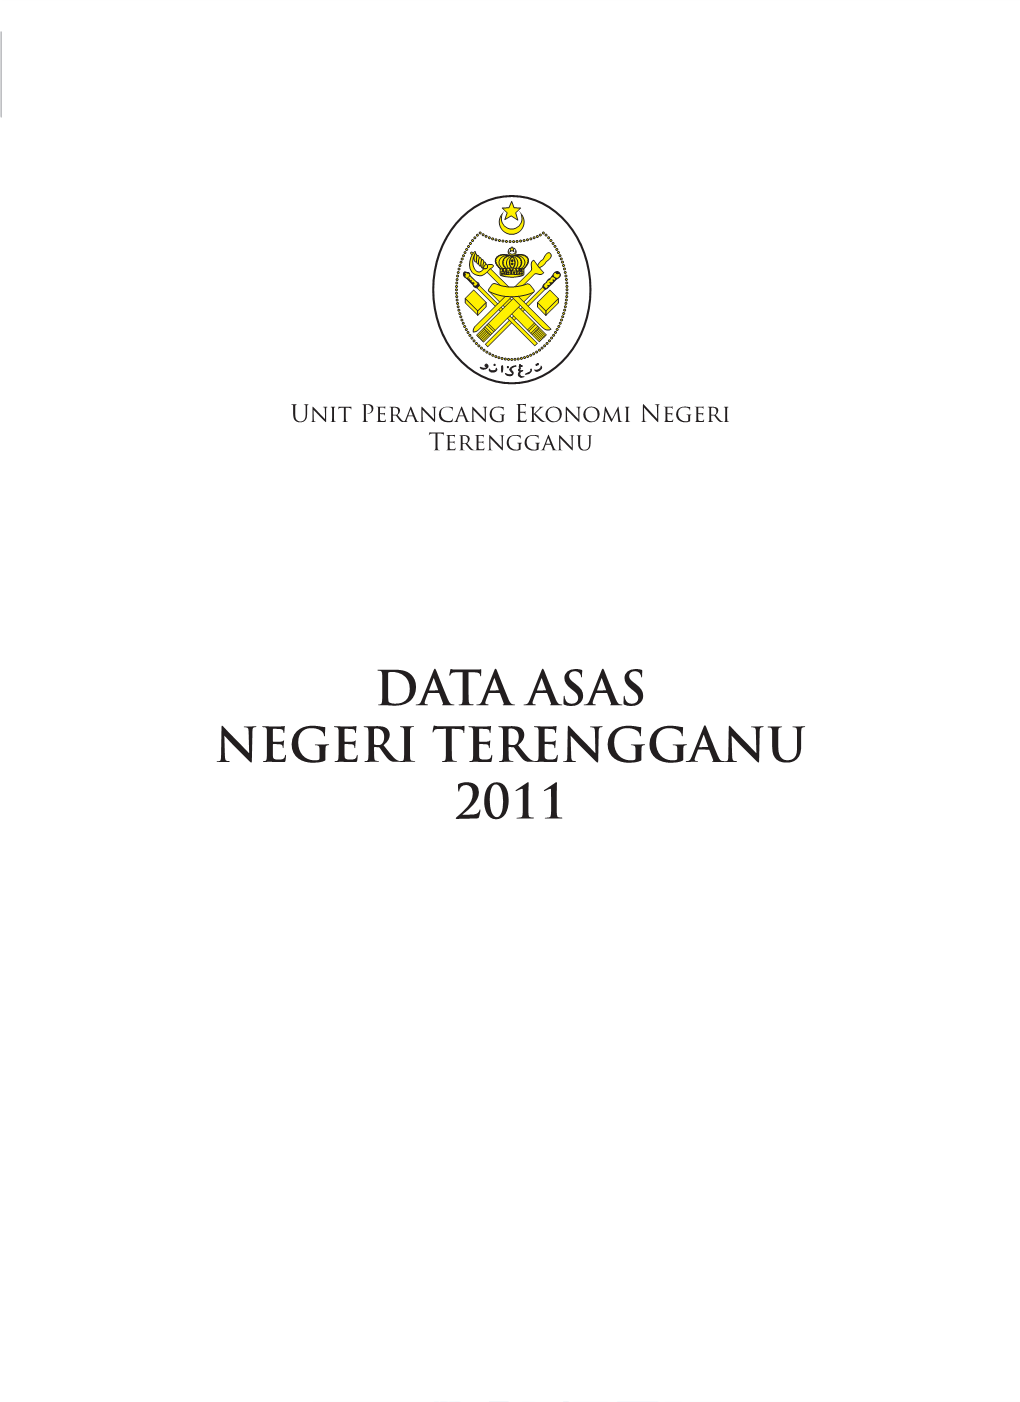 Data Asas Negeri Terengganu 2011 Data Asas 2011 2 Unit Perancang Ekonomi Negeri Terengganu